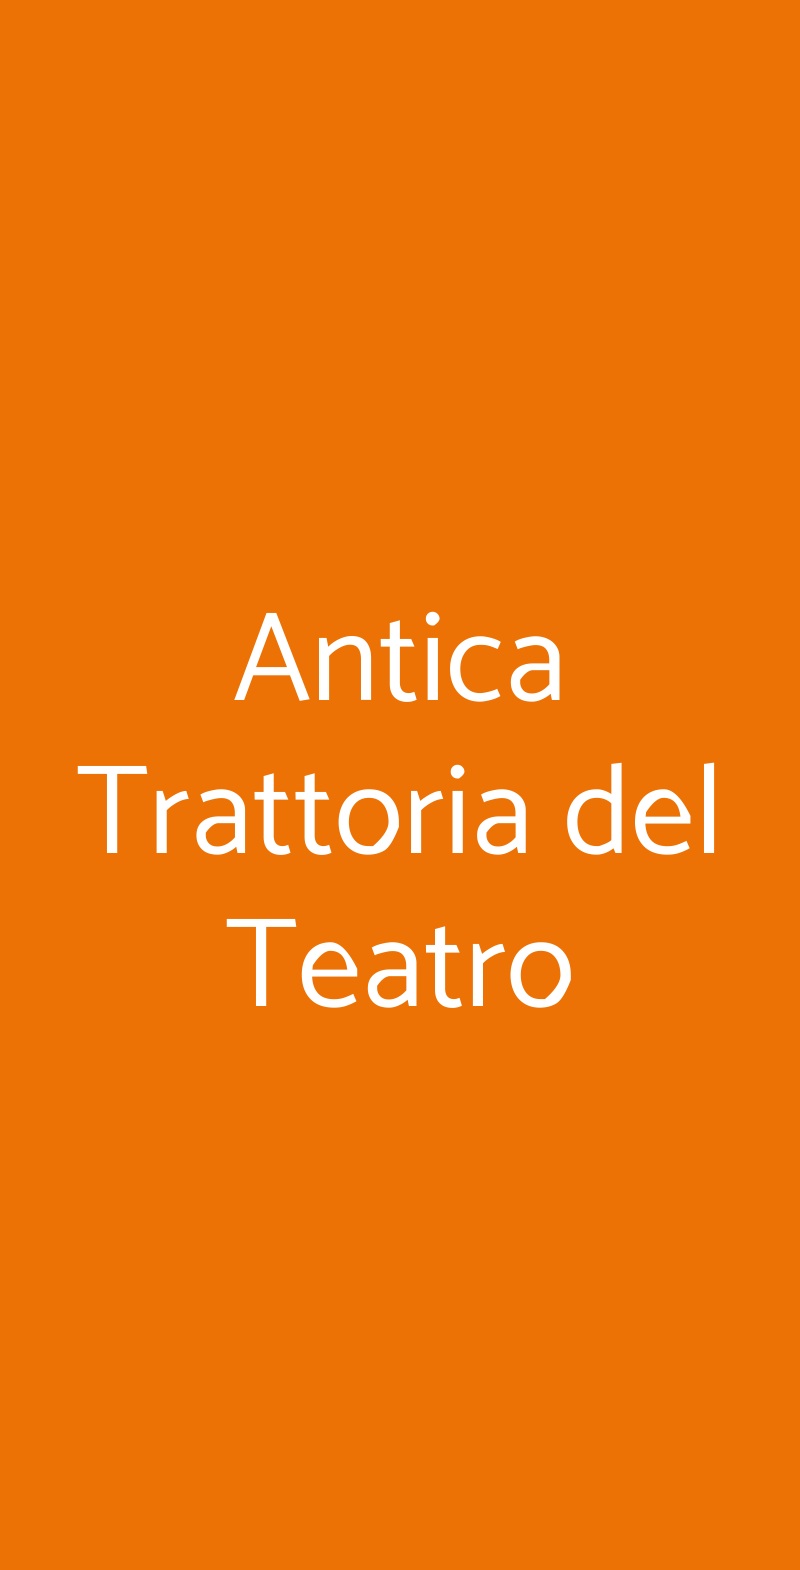 Antica Trattoria del Teatro Lugo menù 1 pagina